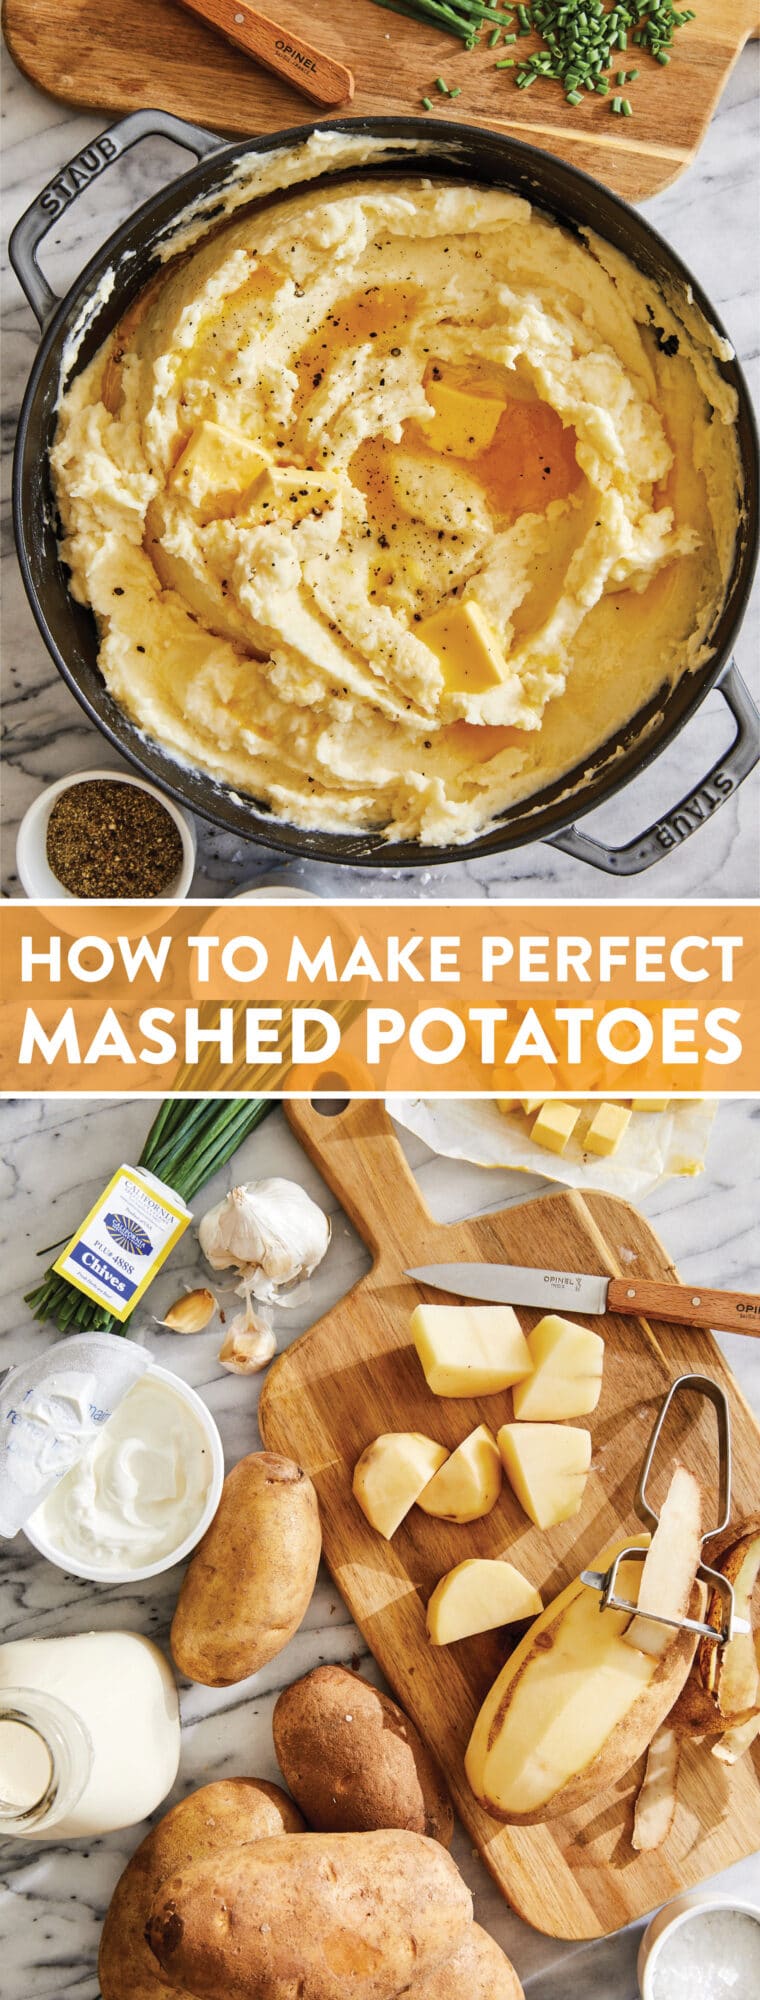 Come preparare un purè di patate perfetto - Prepara il purè di patate migliore e più perfetto (senza grumi) OGNI SINGOLA VOLTA!  Così burroso, cremoso + soffice!